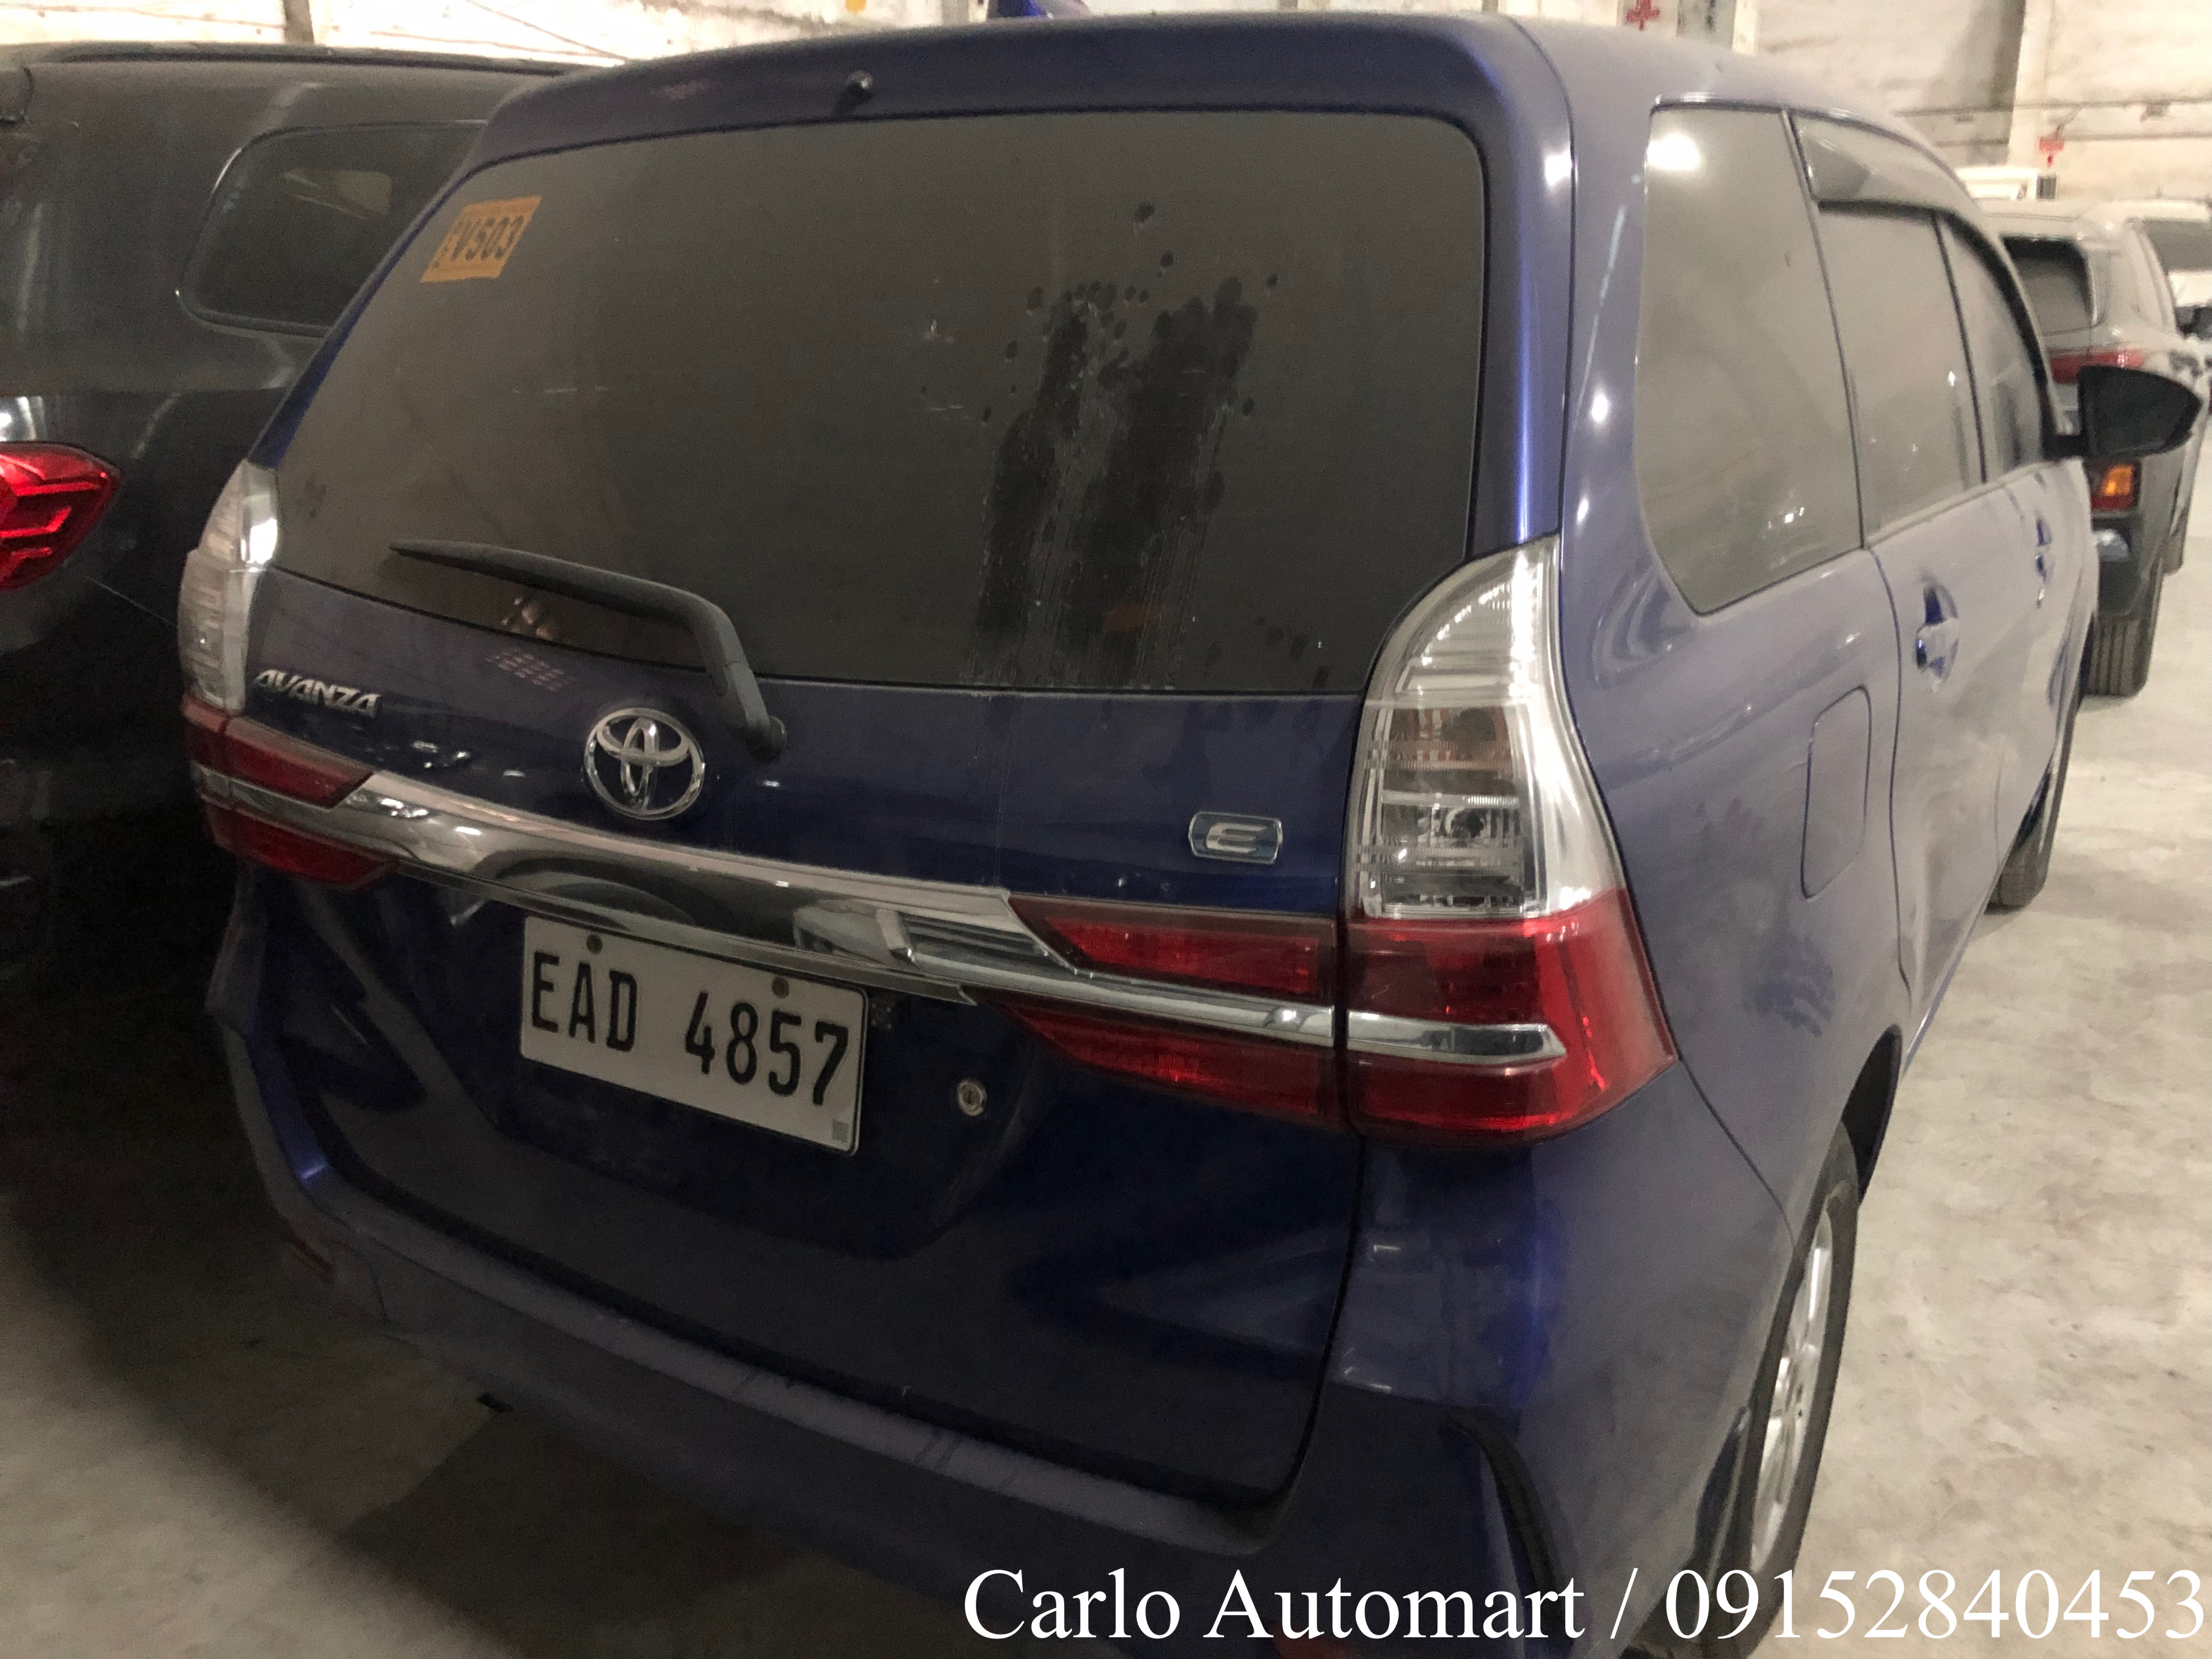 2019 Toyota Avanza E 1.3